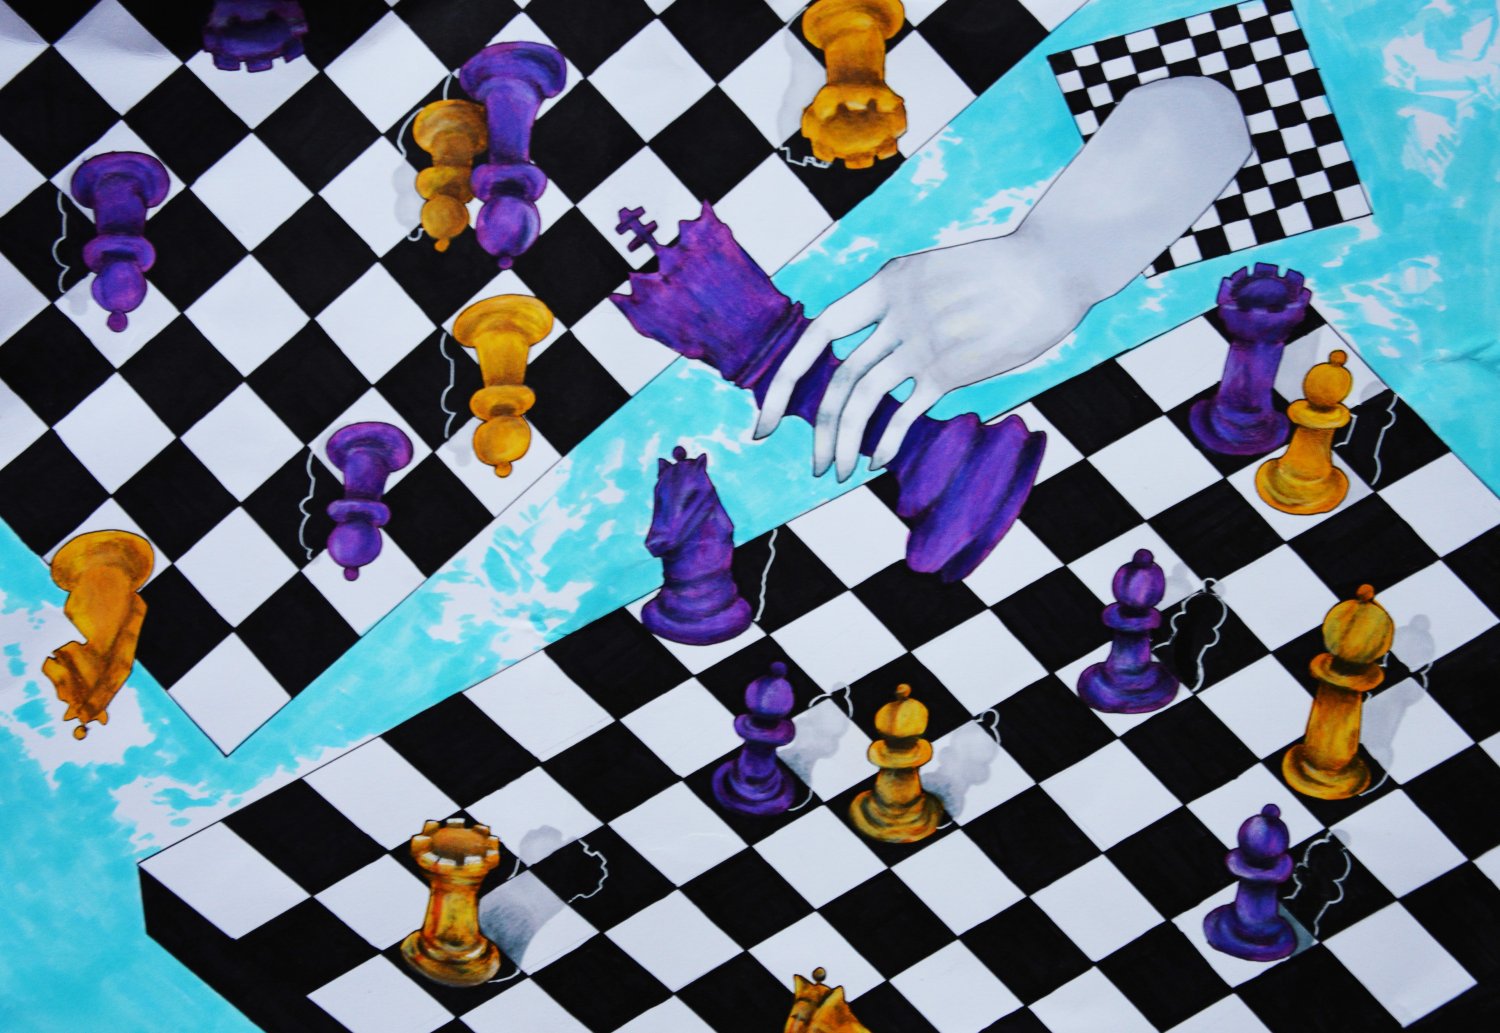 III miejsce: Marta Mioduszewska. Tytuł” Szachy drugi wymiar”
Kolorowa praca wykonana w technice kolażu inspirowana grą w szachy. Na obrazku widzimy kolorowe pionki plansze do gry oraz dłoń, która wynurza się z otchłani.